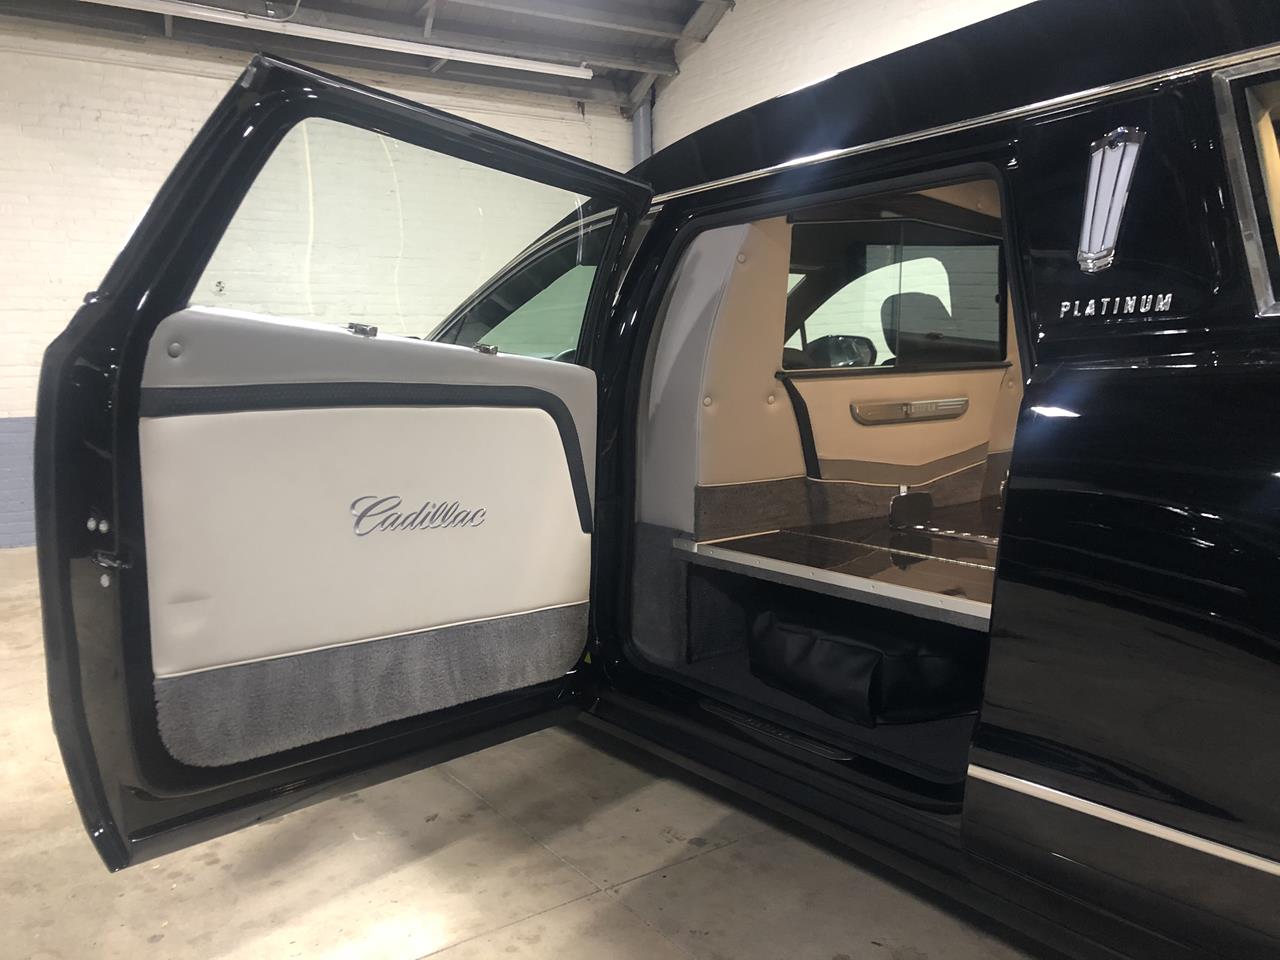 2020 Cadillac Platinum Phoenix C Hearse 1122 6